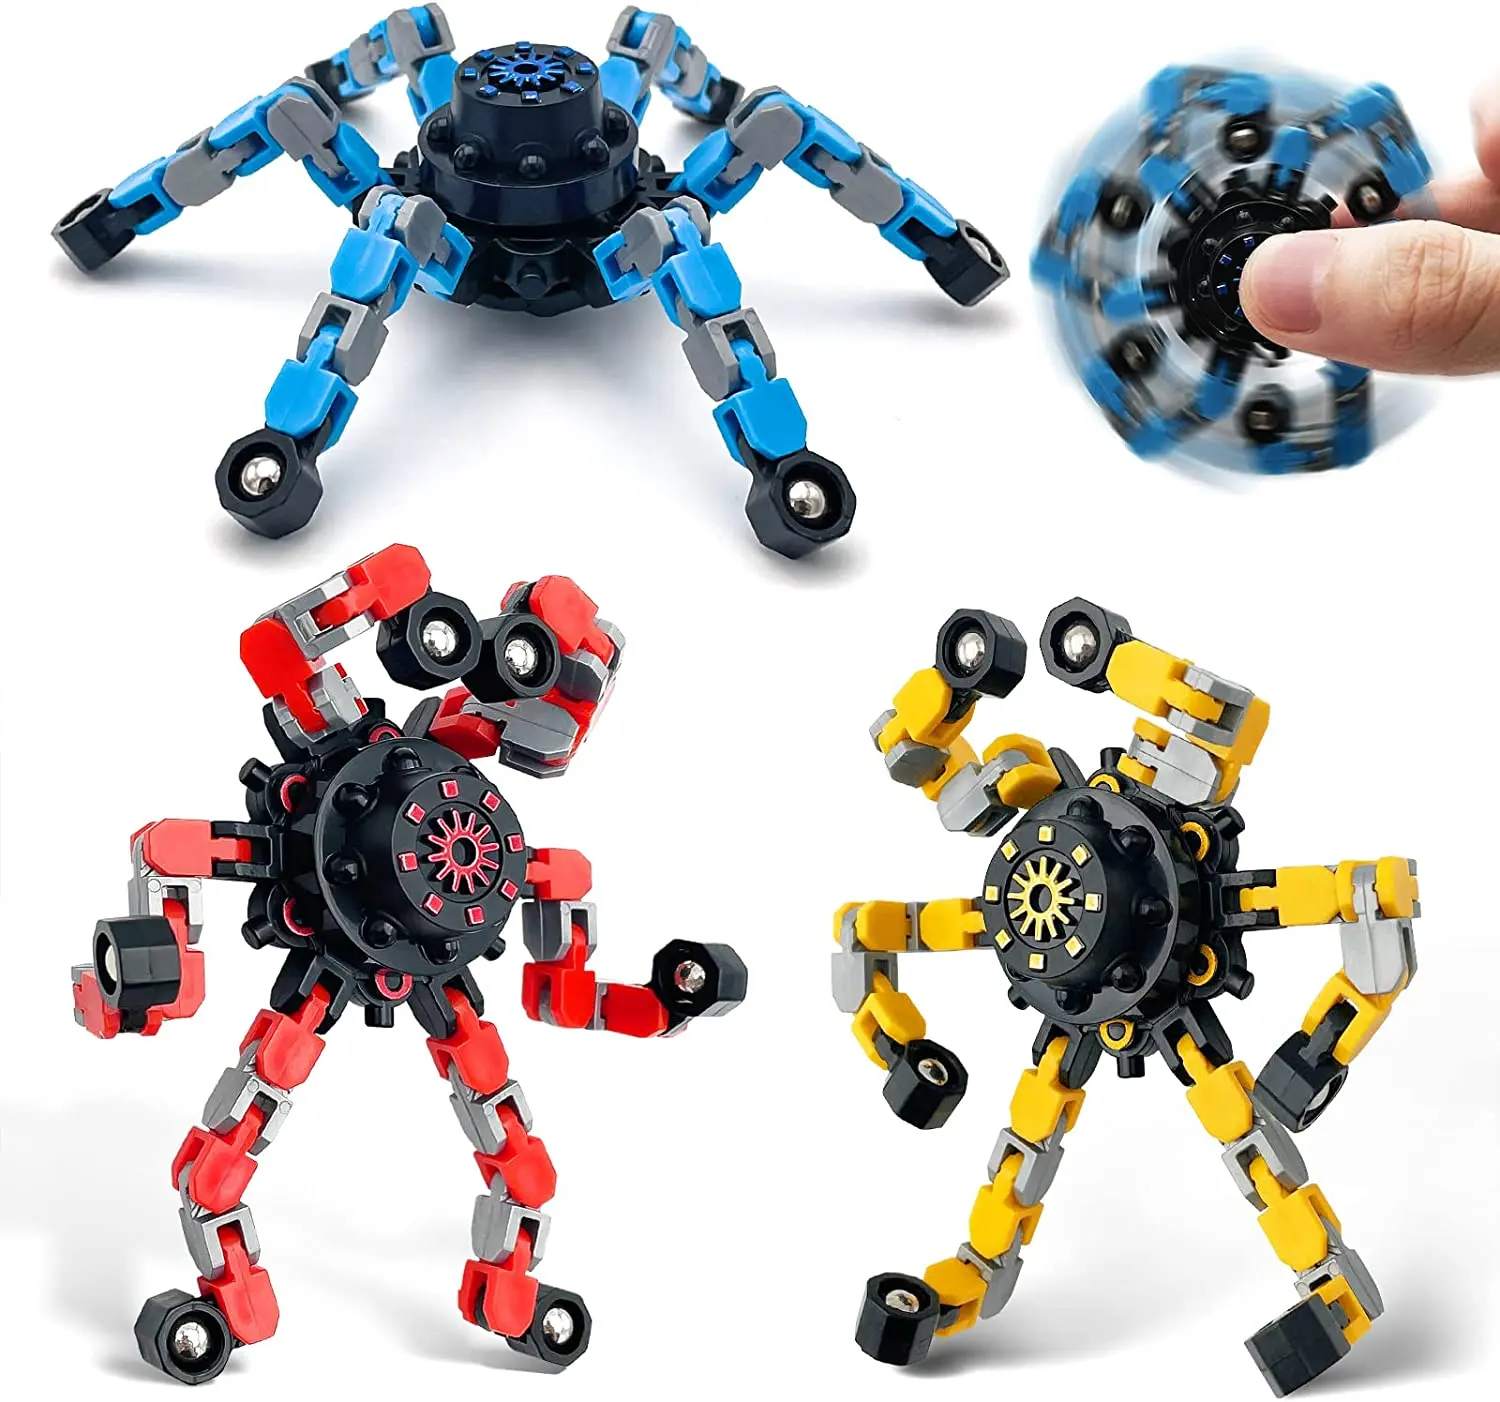 אמזון מכר לקשקש אורגי צעצועי להמרת שרשרת רובוט צעצוע מכאני אצבע ספינר צעצועים למבוגרים וילדים